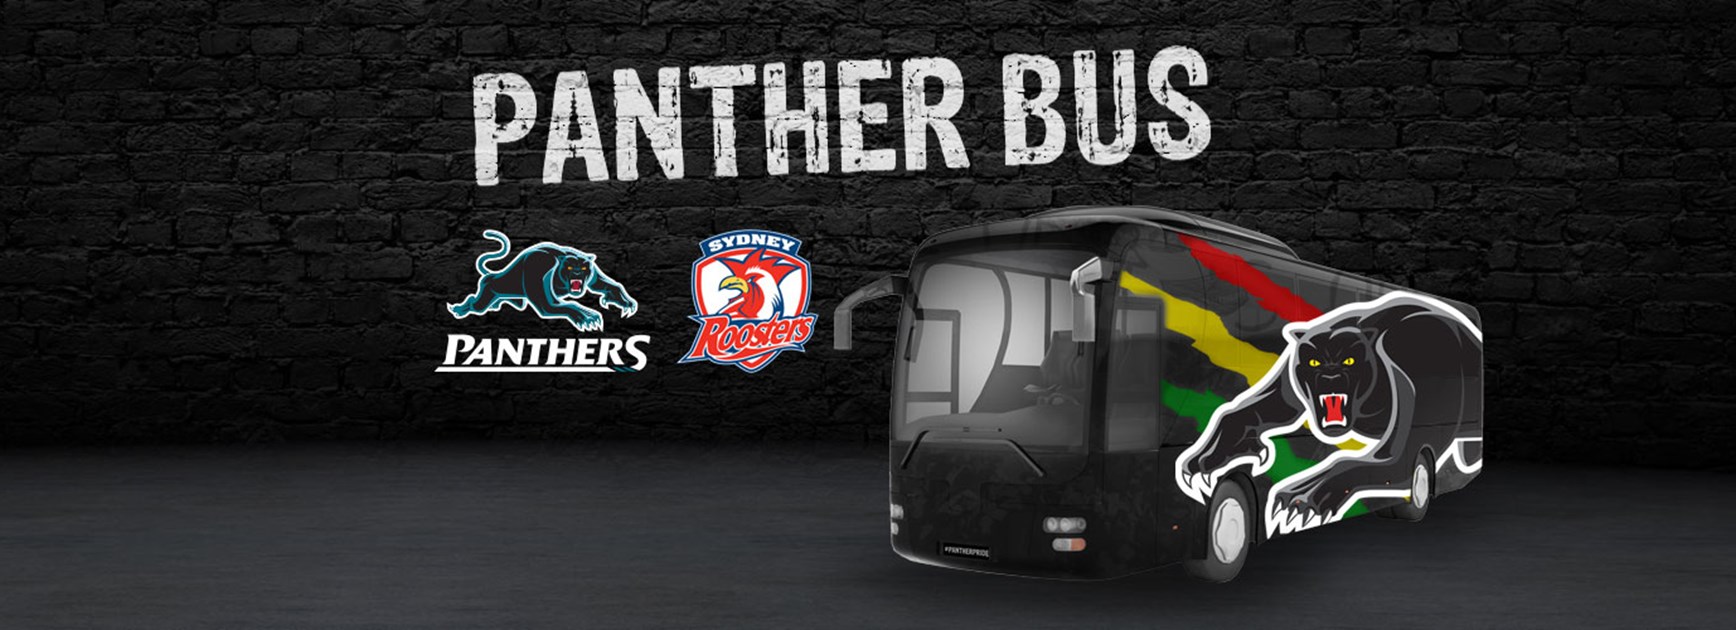 Panther Bus: Round 15